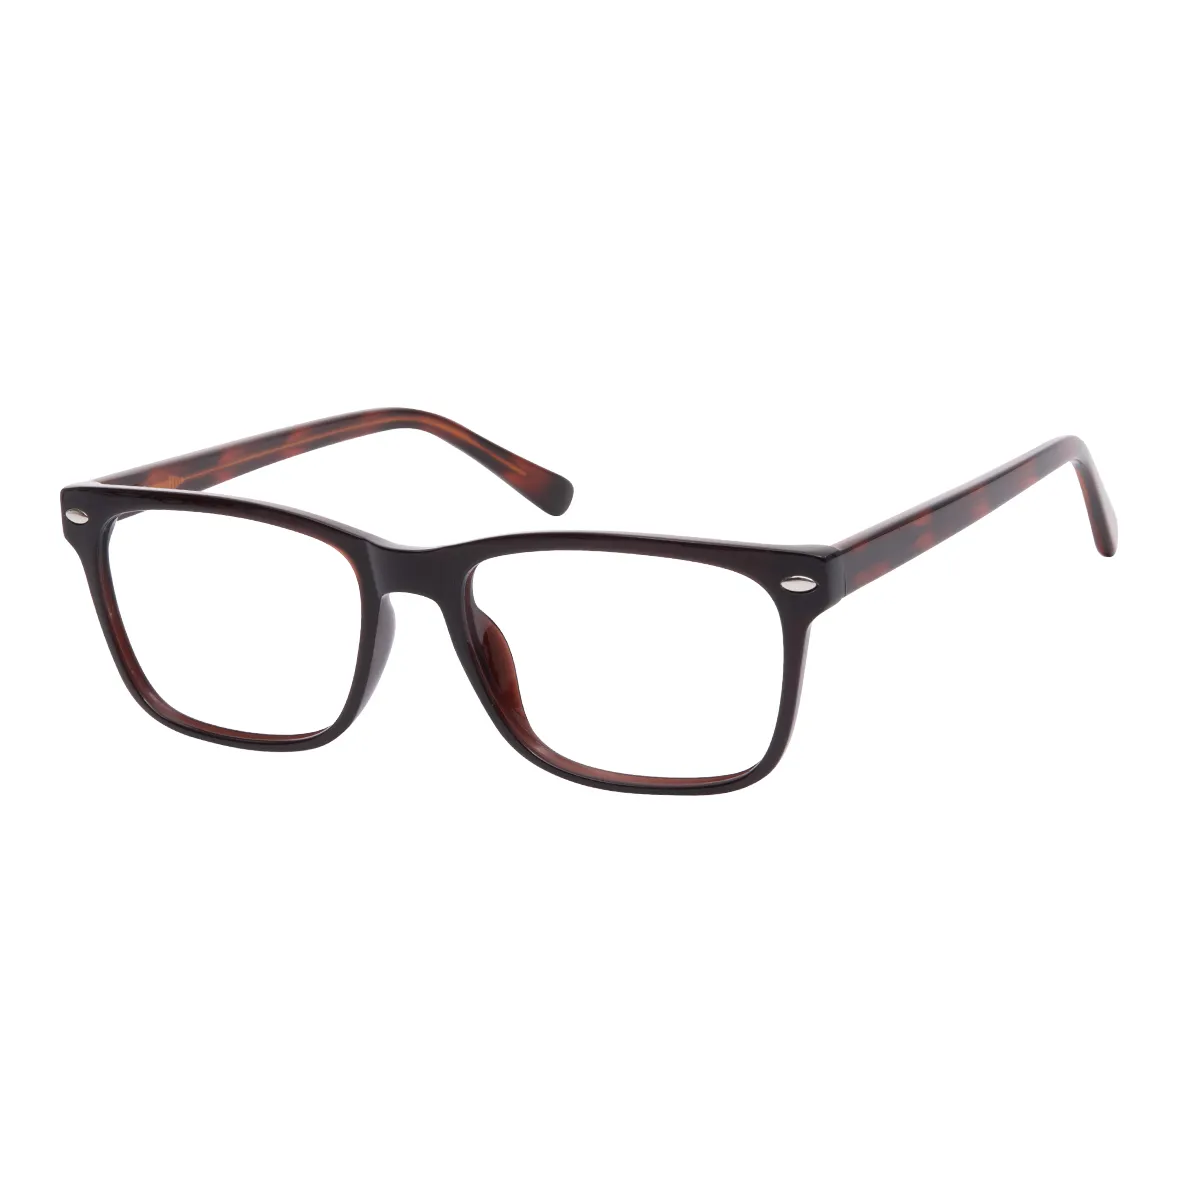 Roque - Rectangle Brown-Tortoiseshell Glasses for Men & Women